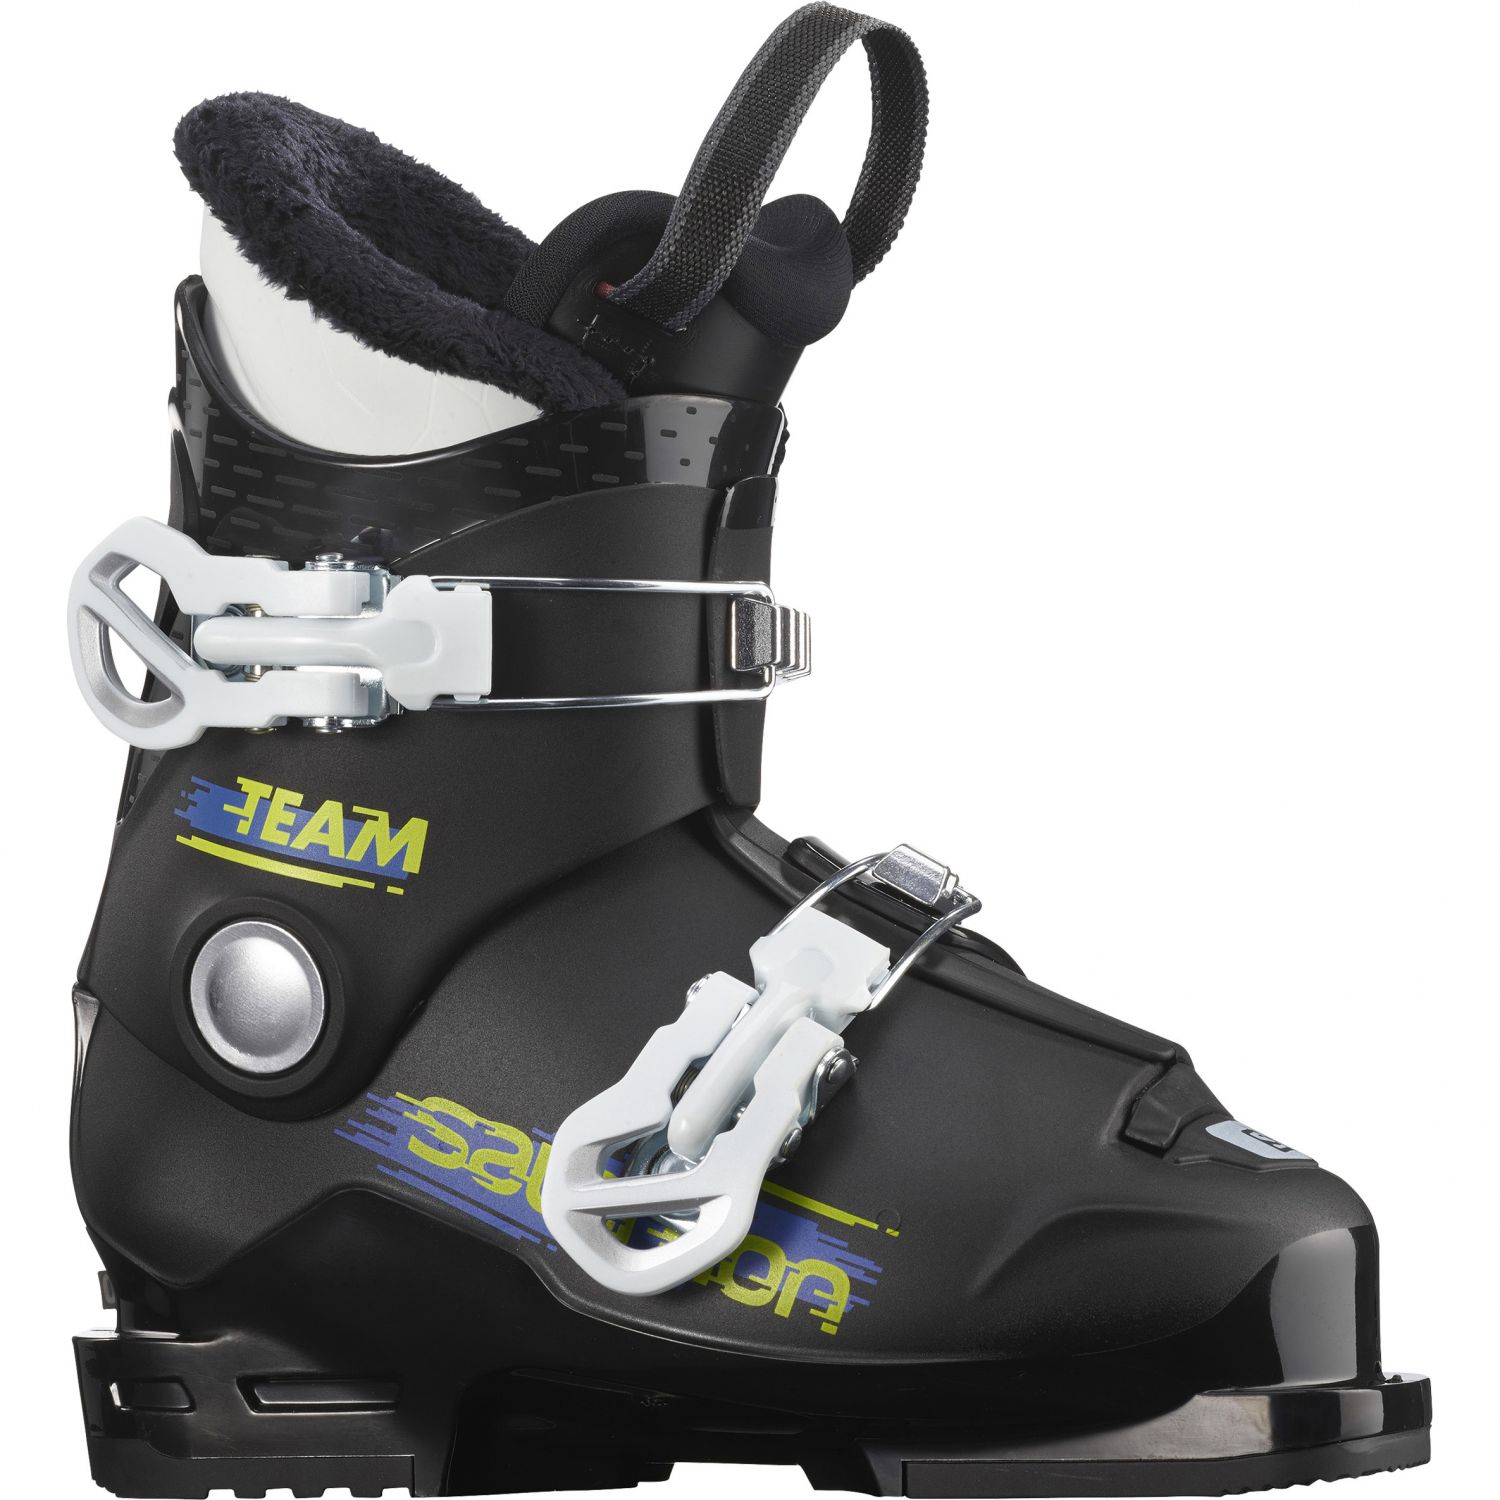 Billede af Salomon Team T2, skistøvler, junior, sort/hvid hos Skisport.dk